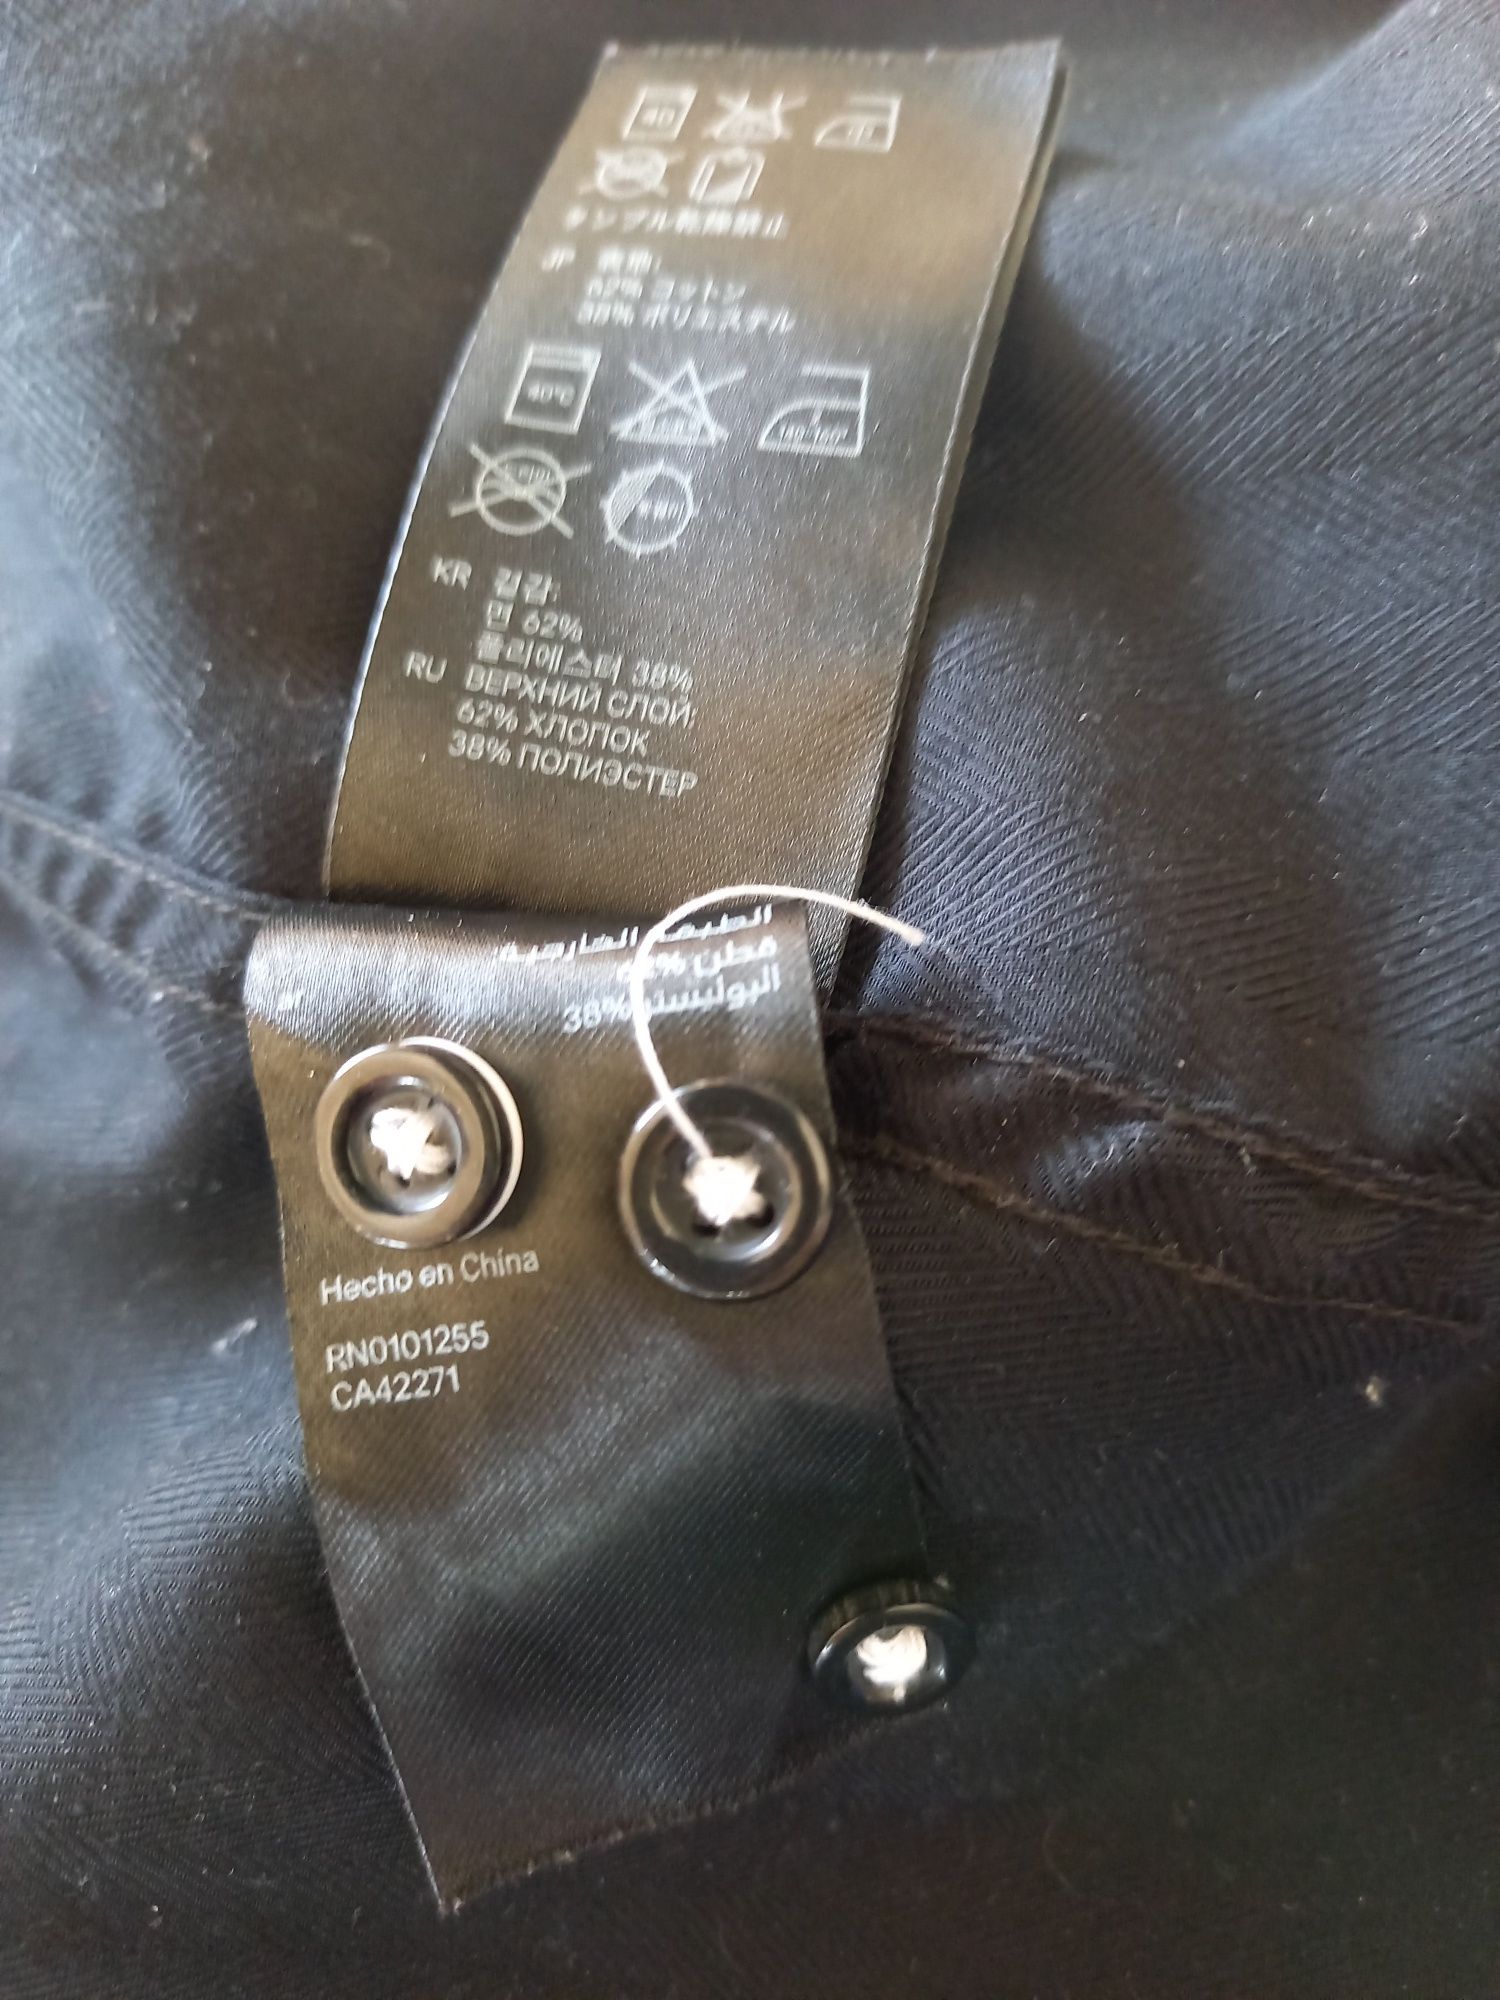 Czarna z dodatkami szarości koszula H&M na rozmiar M.